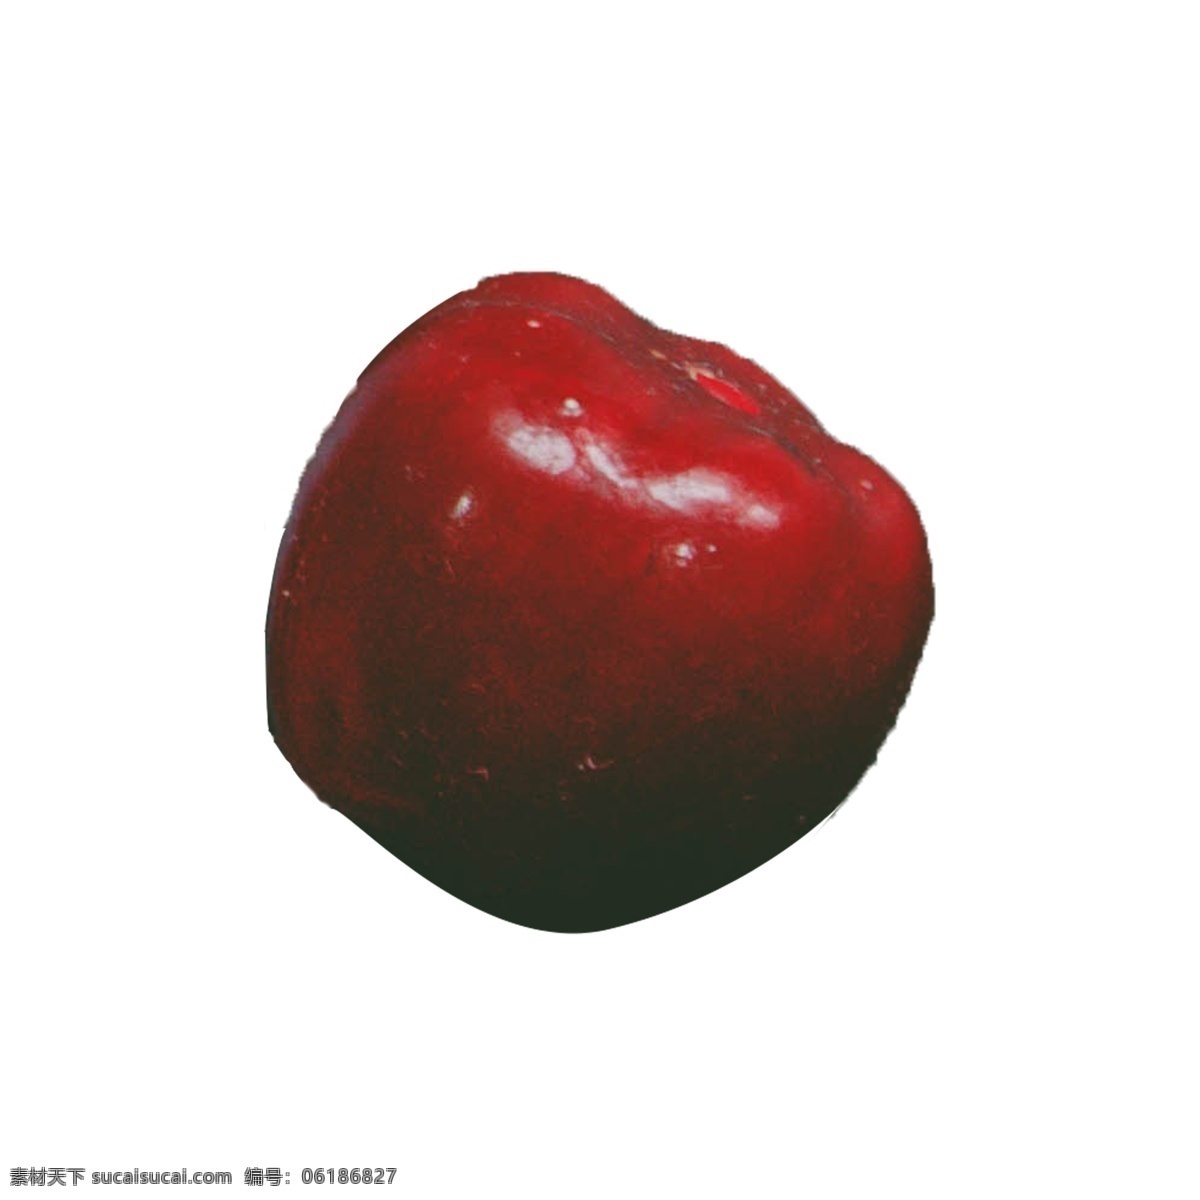 苹果 免 抠 红苹果 红富士 一个红苹果 一个 水果 新鲜的水果 好吃的水果